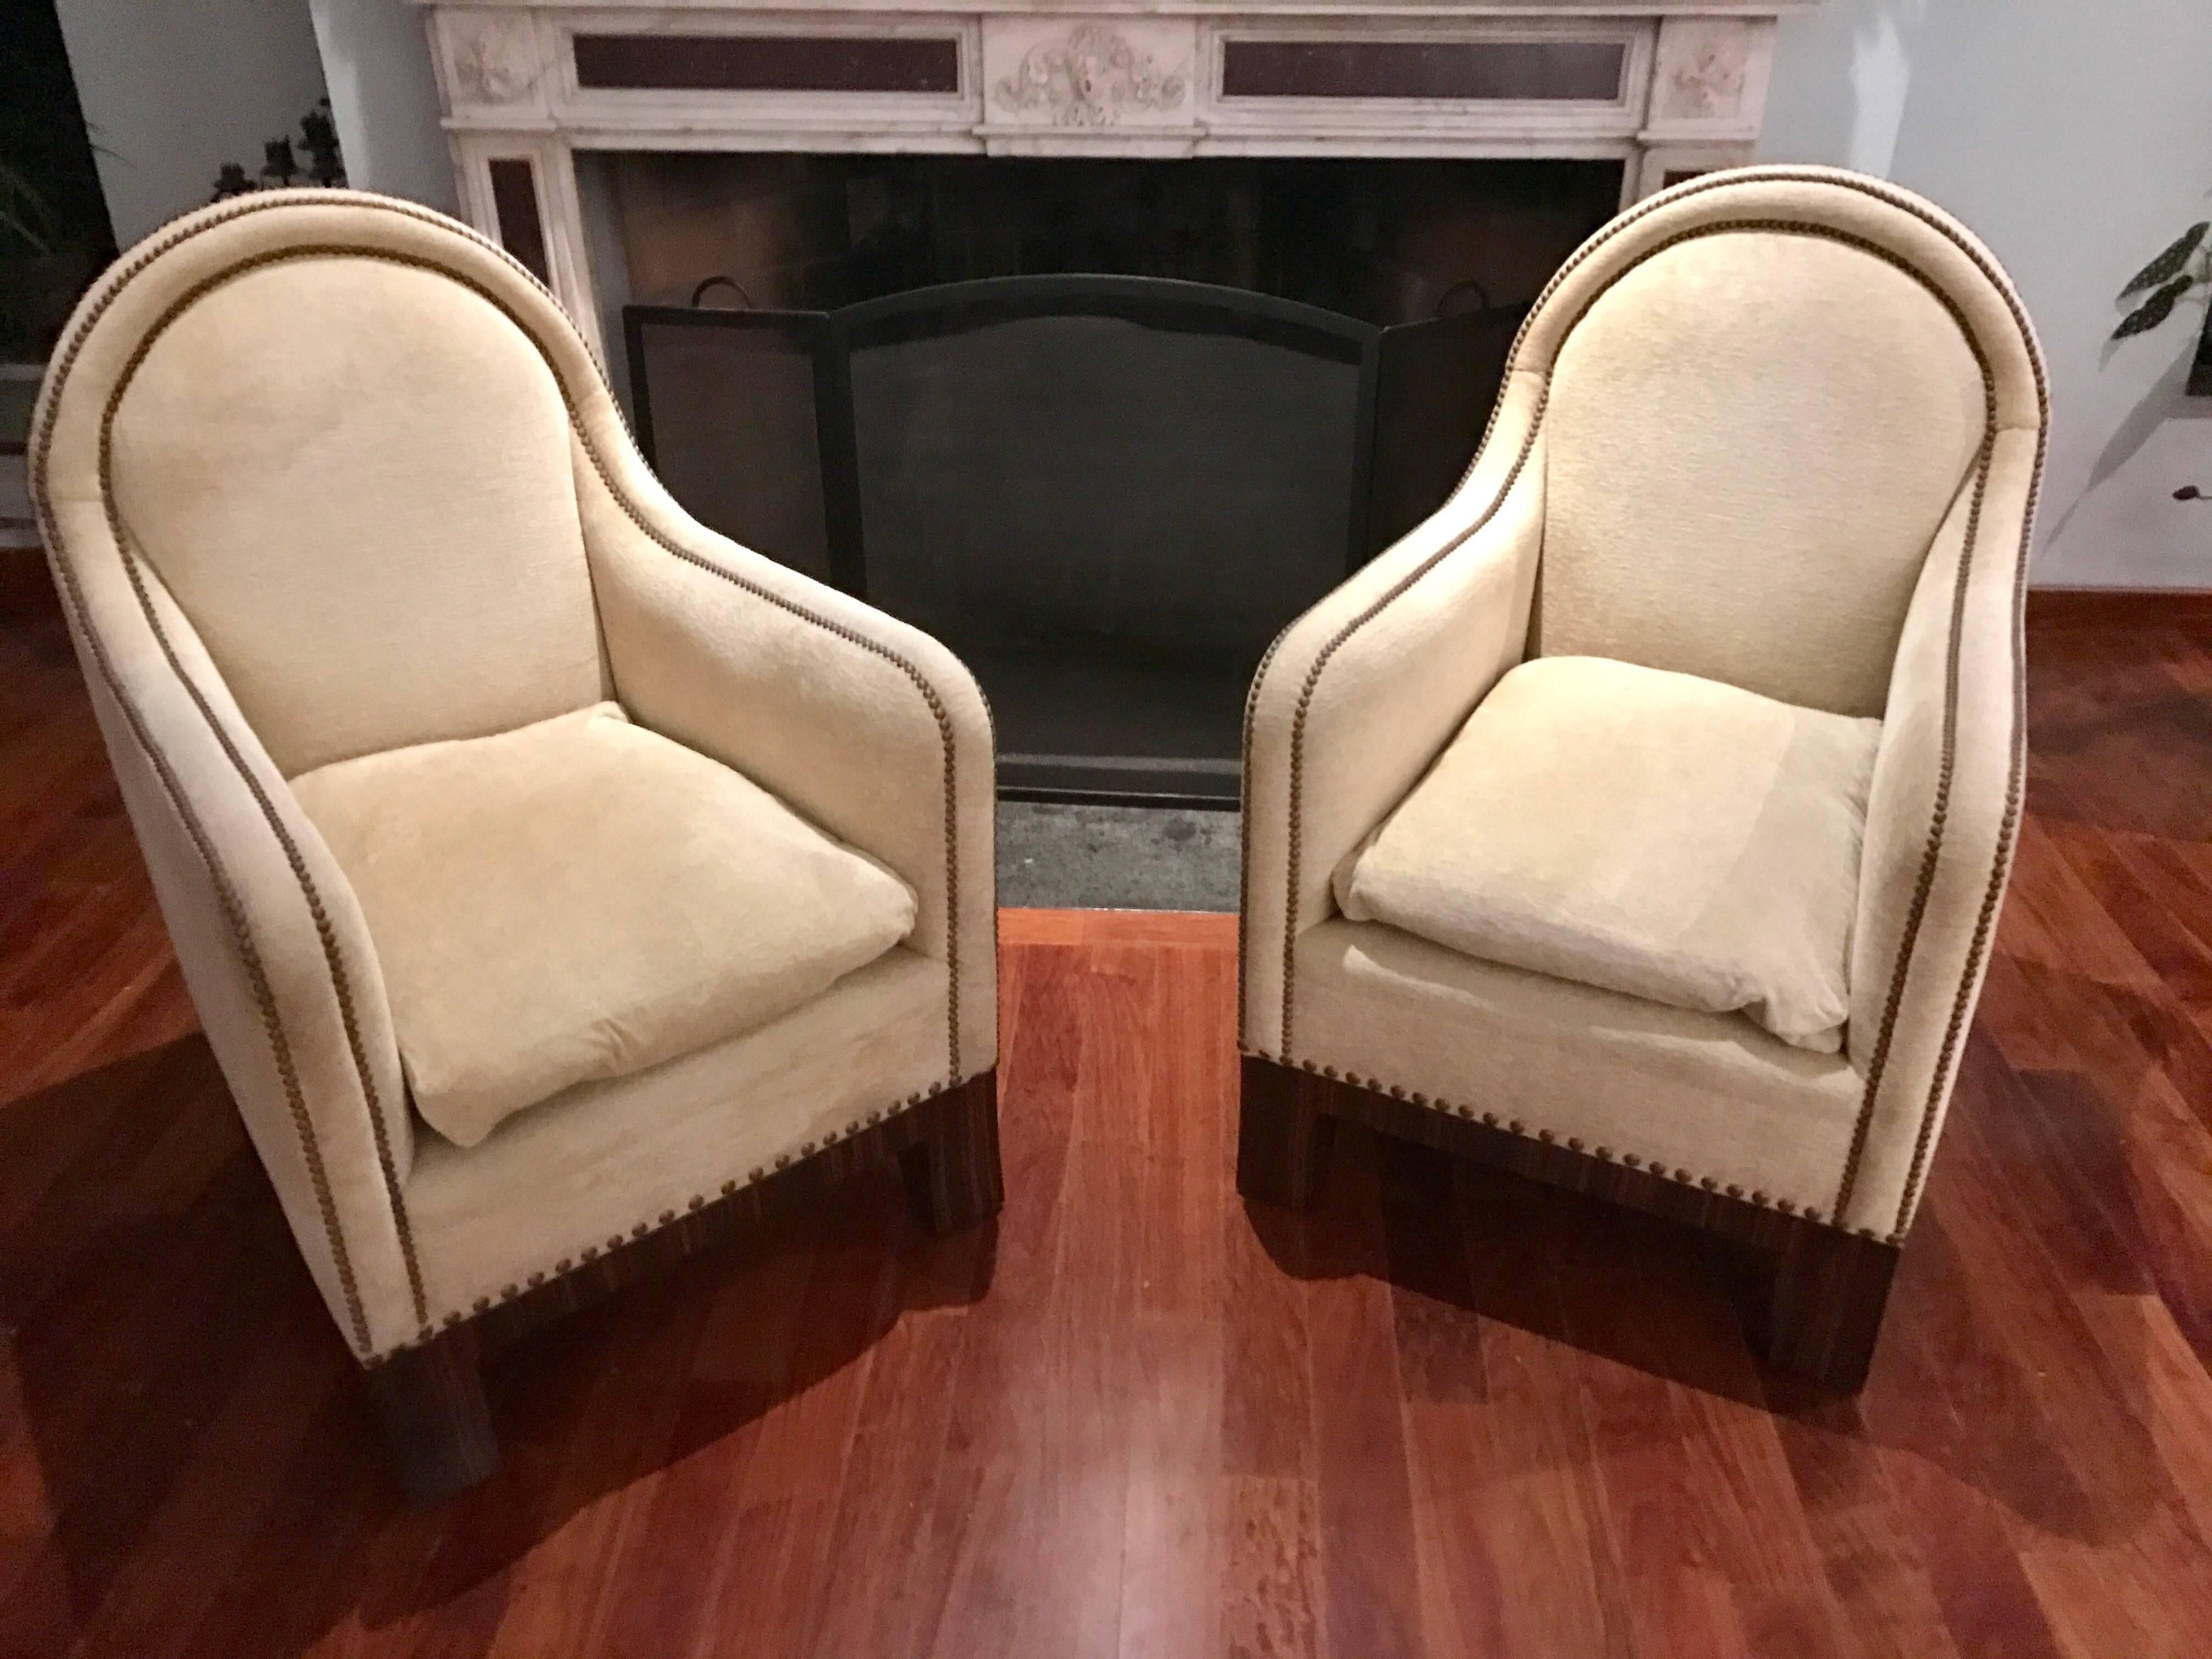 Cette élégante paire de chaises longues modernes du milieu du siècle, avec leurs dossiers hauts et leurs sièges profonds, est l'endroit idéal pour se mêler aux autres.
Une fois que vous vous serez assis, il sera difficile de vous relever.
Les pieds